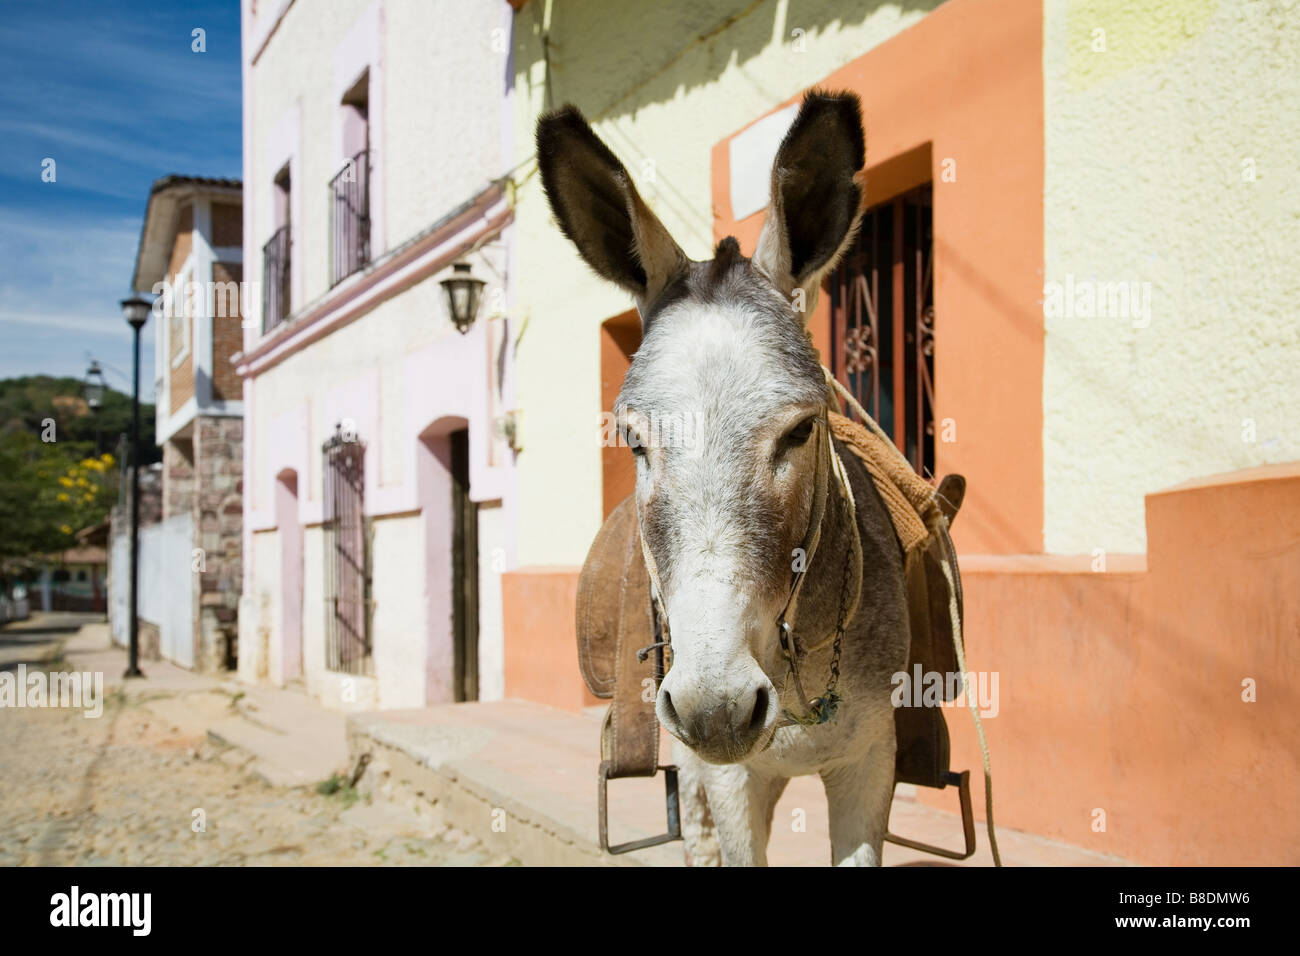 Donkey in copala Stock Photo